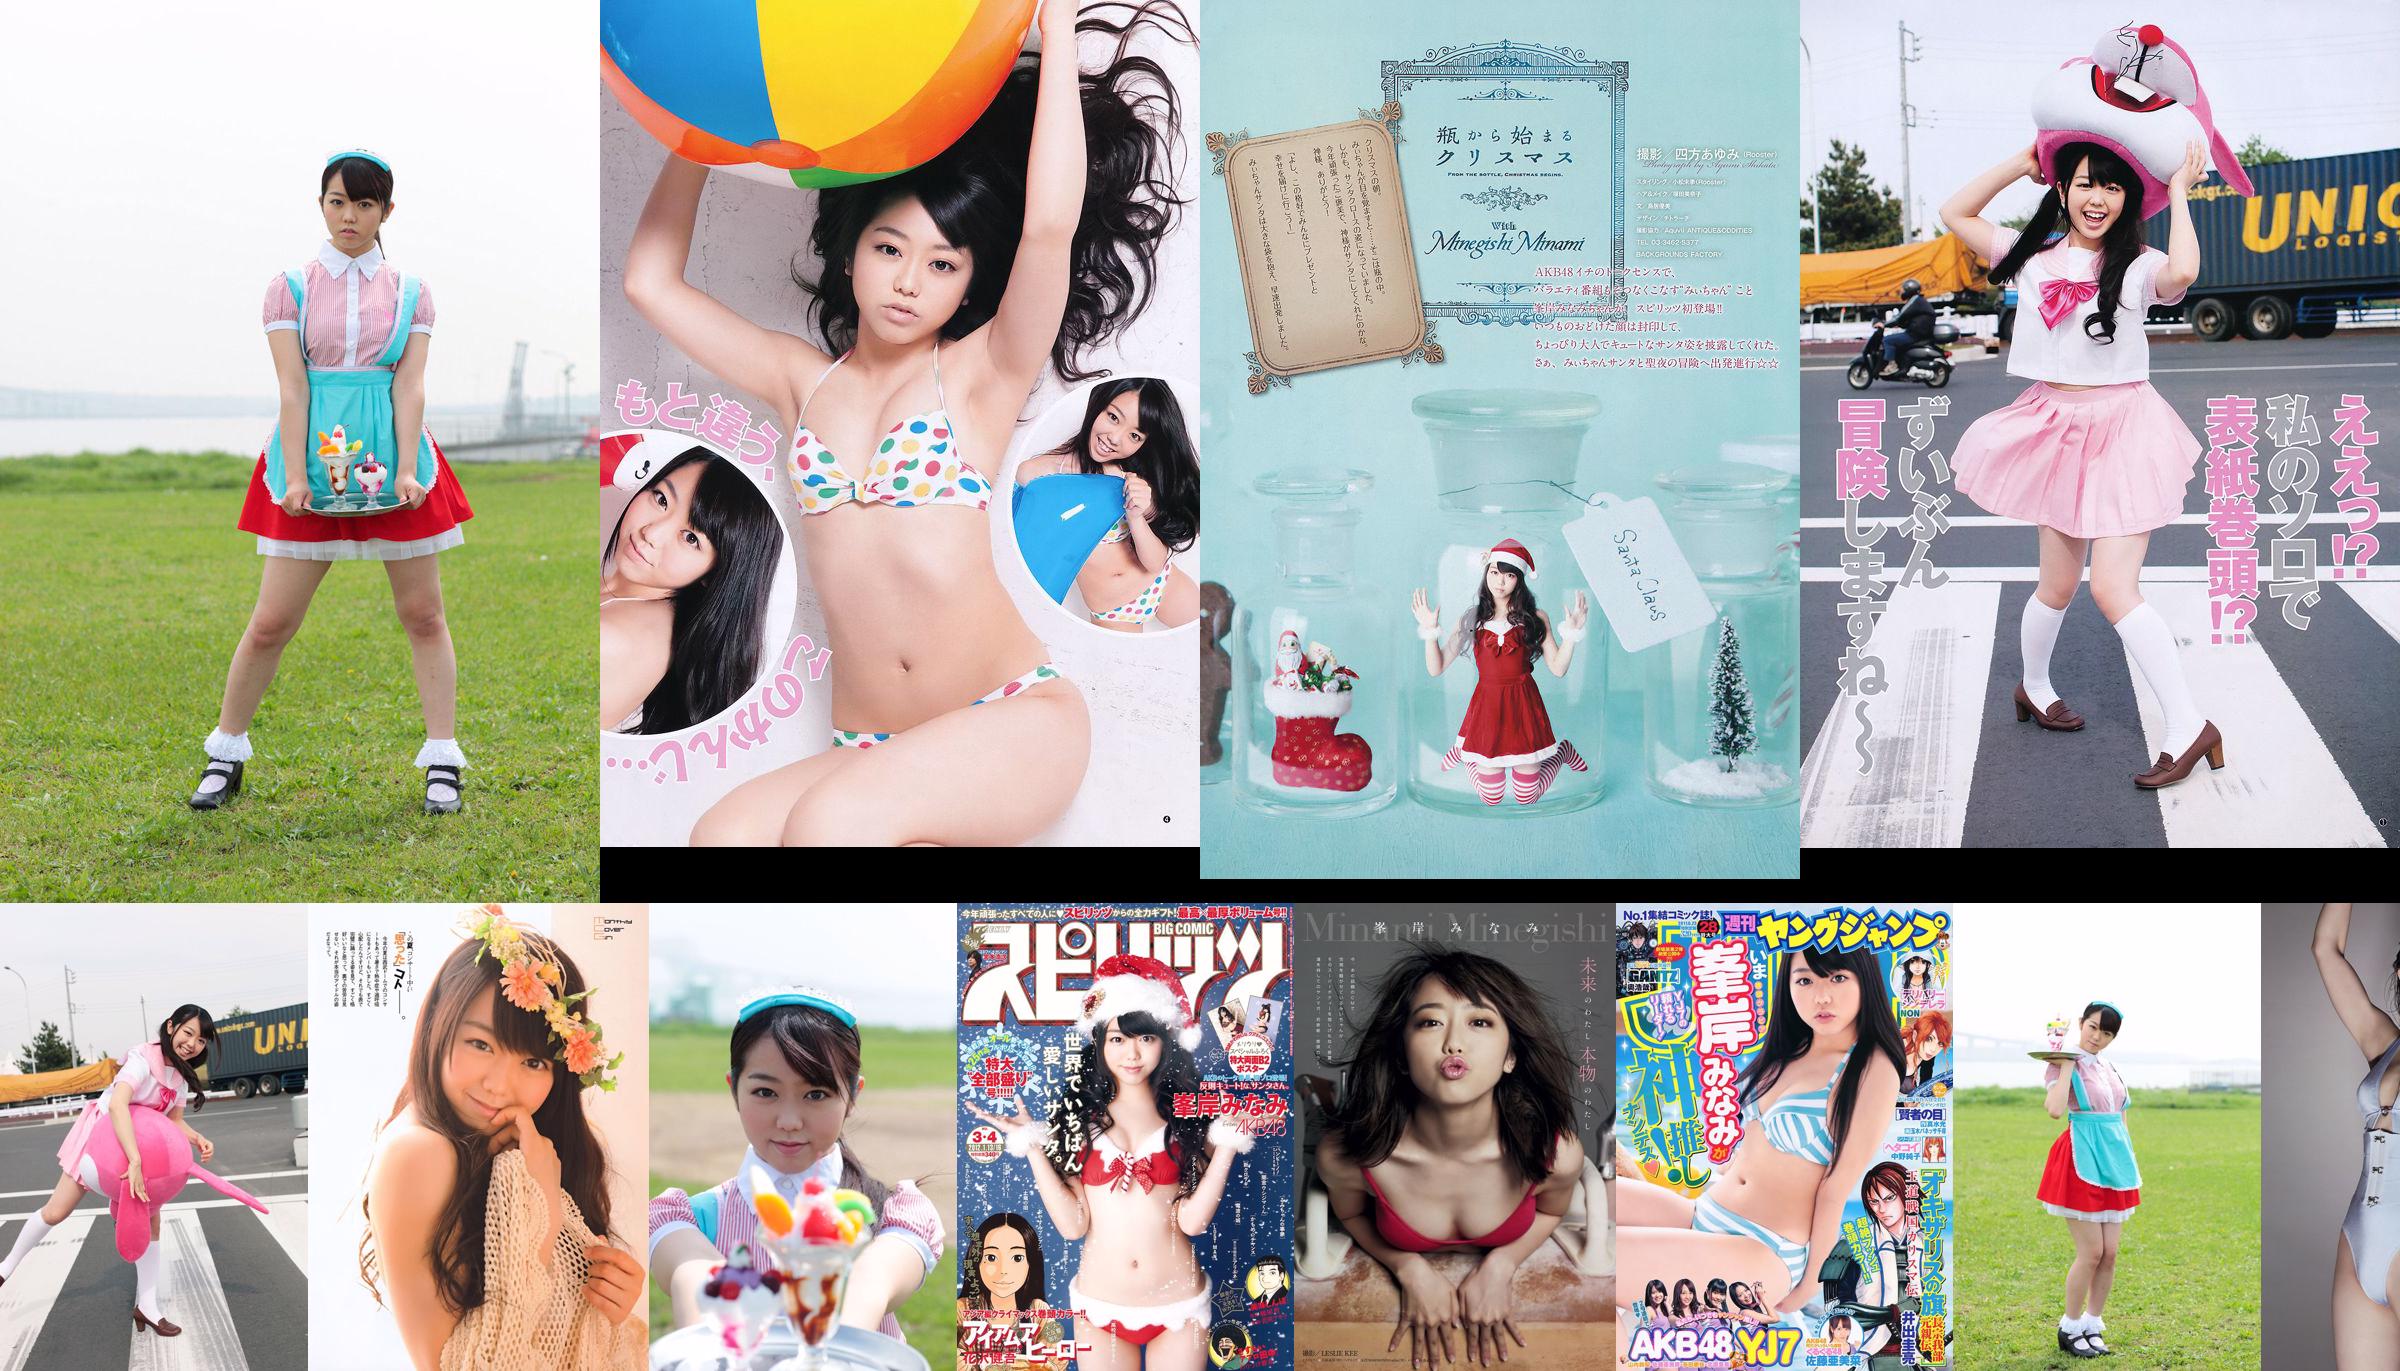 [Weekly Big Comic Spirits] Minaki Minegishi 2012 No.03-04 Photo Magazine No.560f53 Page 1